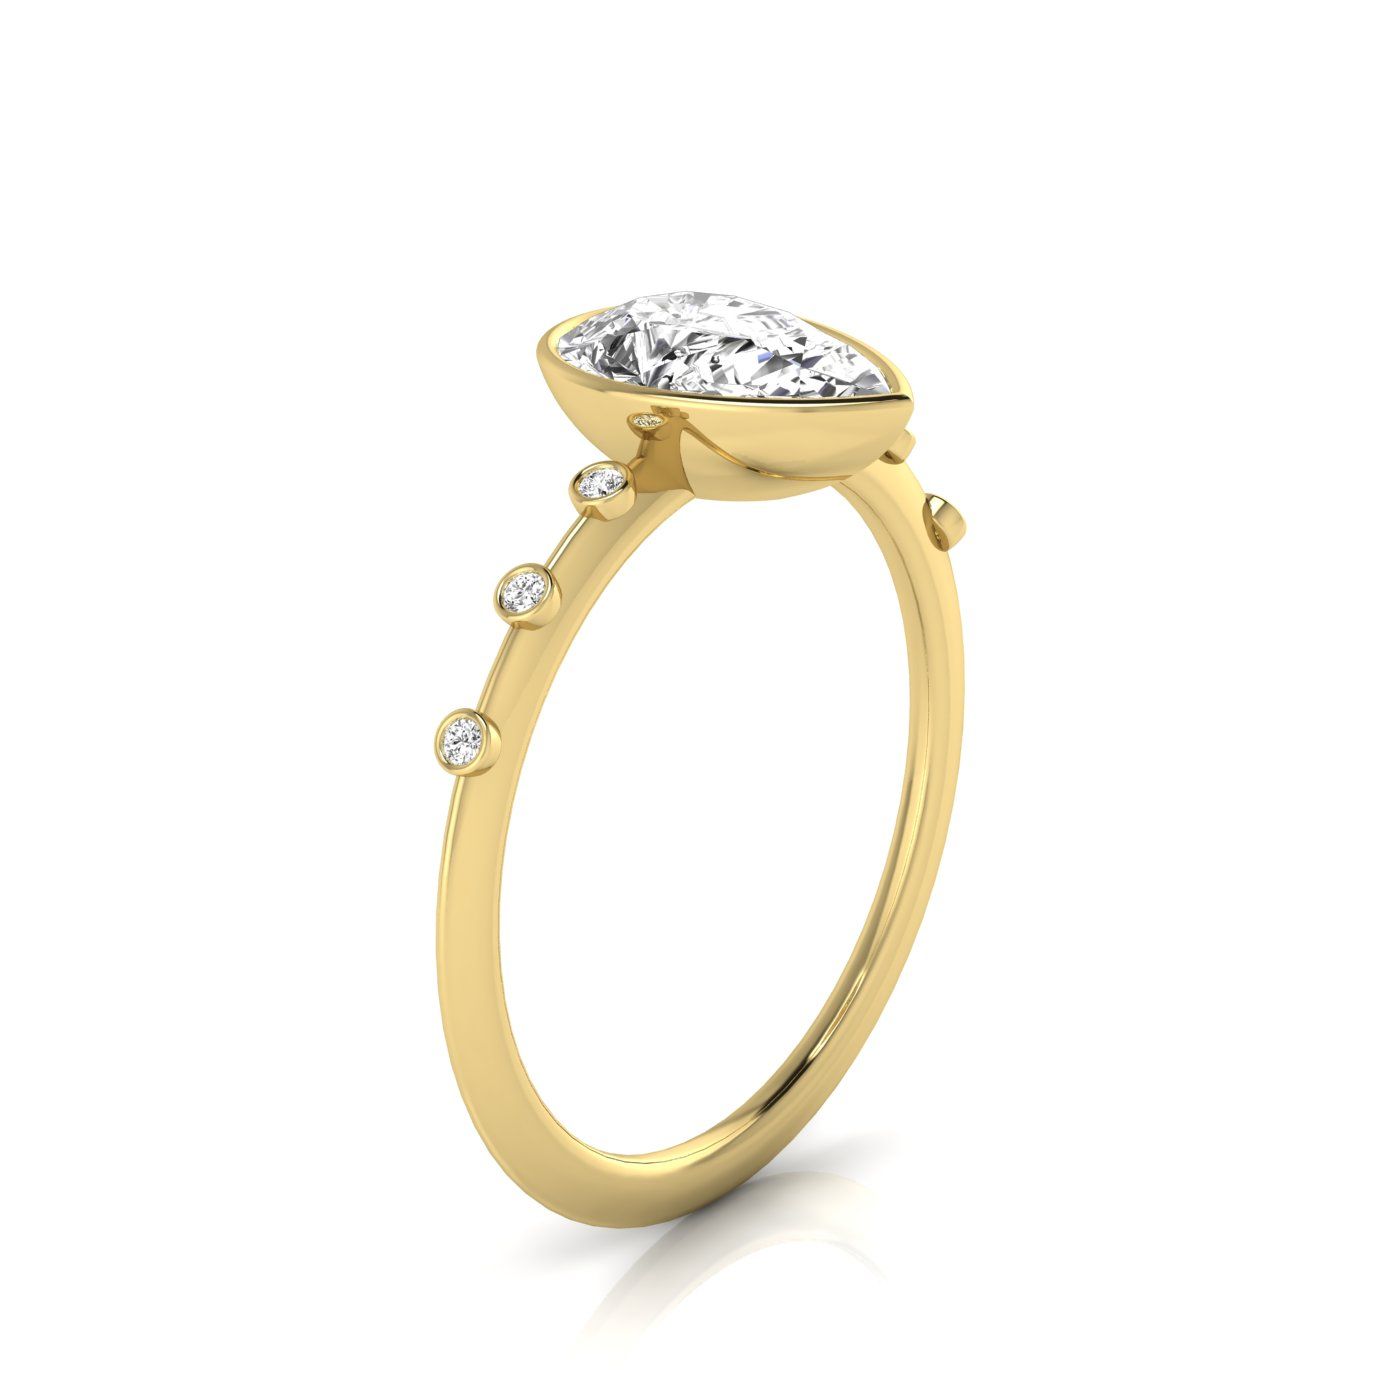 14ky Bezel Set Pear Engagement Ring With 6 Bezel Set Round Diamonds On Shank